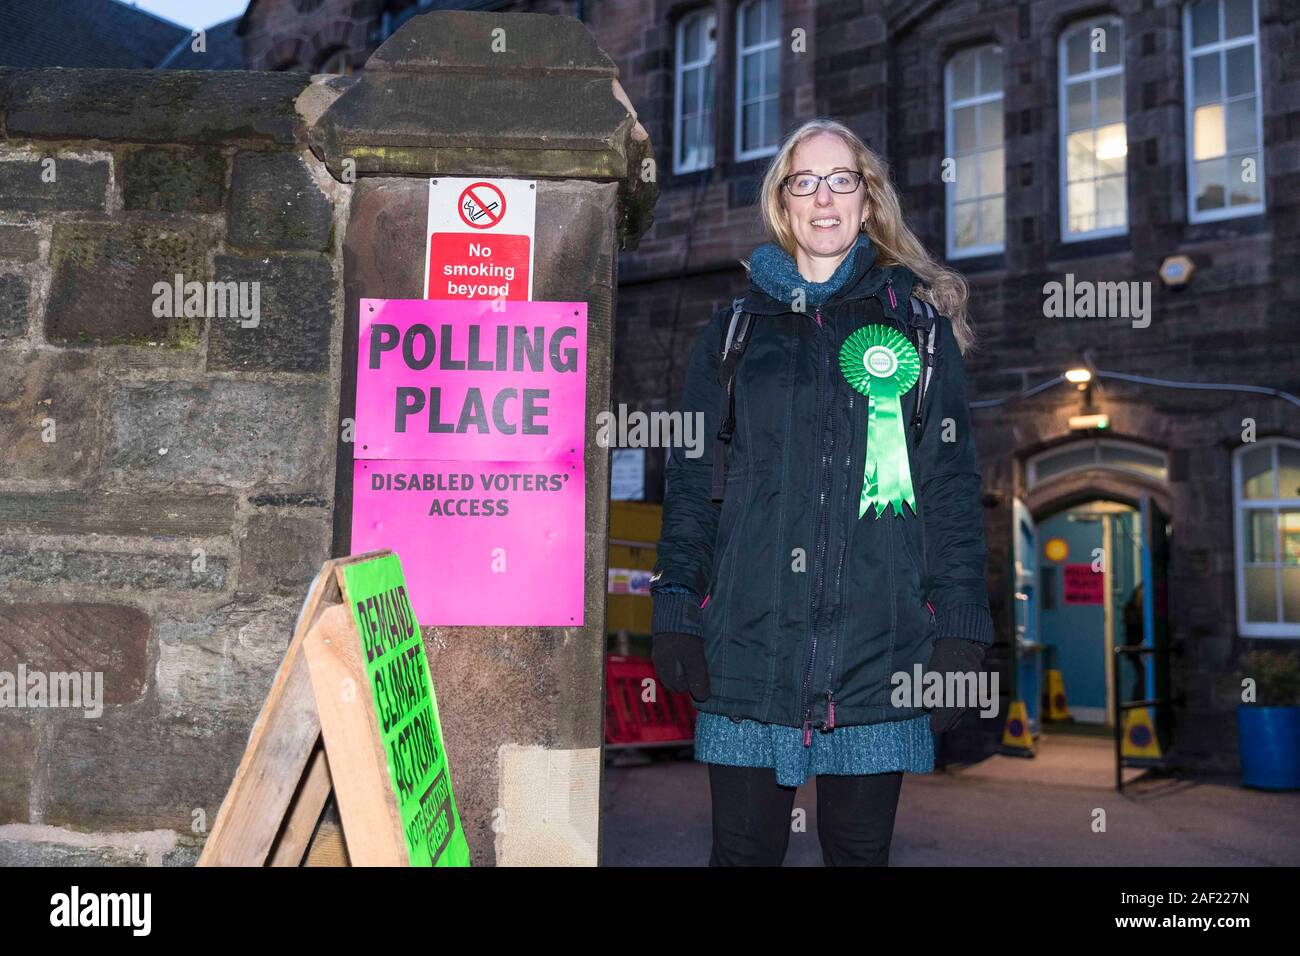 Edinburgh, Vereinigtes Königreich. 12. Dezember 2019 dargestellt: Lorna Slater, Co-Convenor der schottischen Grünen stimmen in Edinburgh. Credit: Rich Dyson/Alamy leben Nachrichten Stockfoto